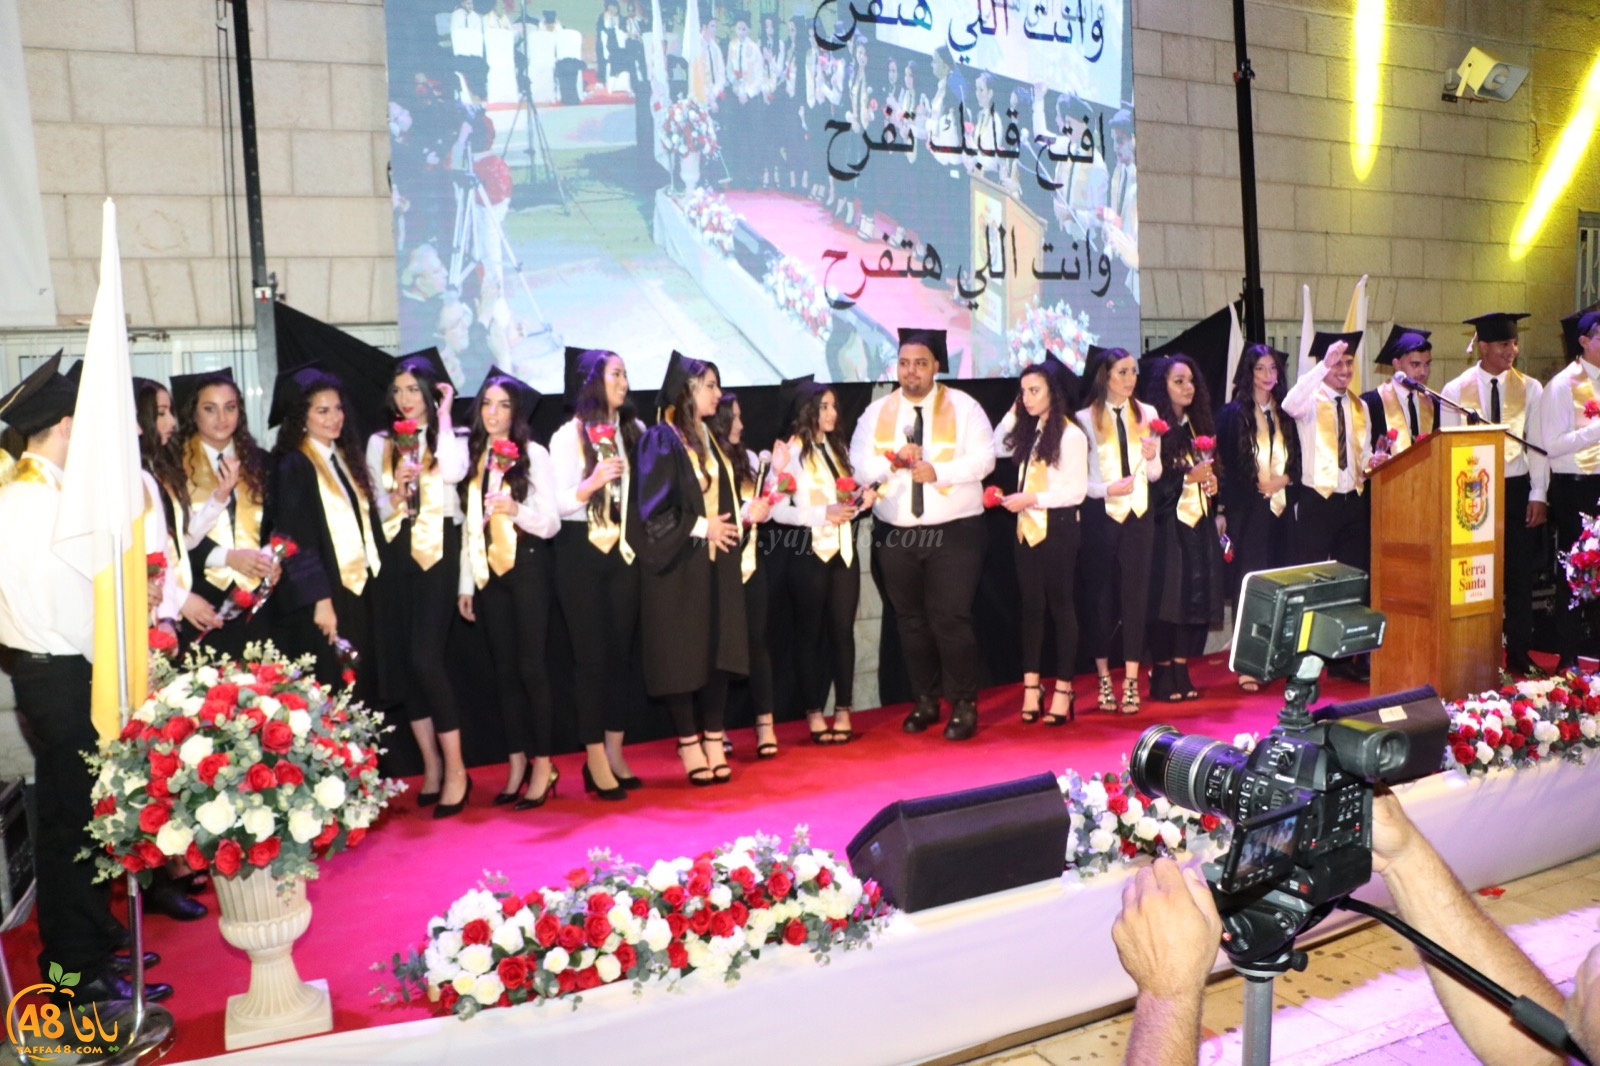  بالفيديو: مدرسة تراسنطا الثانوية بيافا تحتفل بتخريج فوجها الـ50 